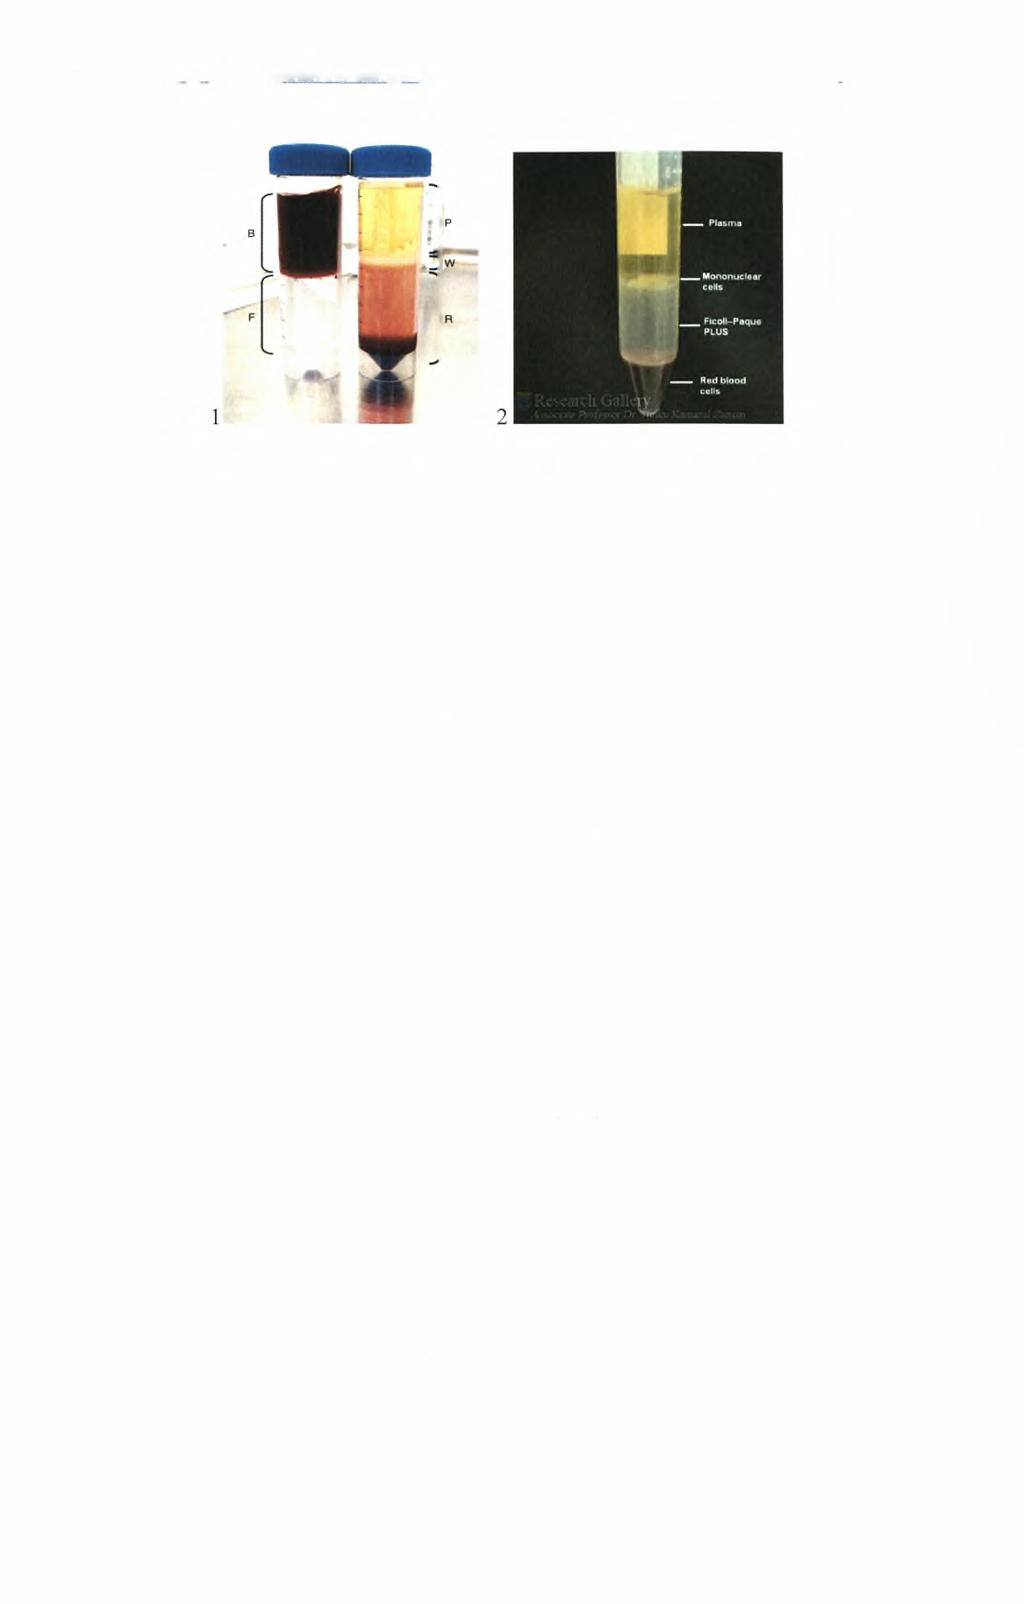 Ηπίόραση εκ7ΐ)λισυάτο)ν το>ν ψυγανθών στο σύστημα tpc γλουταθειόνηί ανθρώπινων ιιονοκύτταρων περιφερικού aiuaroc Εικόνα 2.1: 1) (Β) Το ευδιάκριτο στρώμα του αίματος και (F) το στρώμα με το Ficoll.